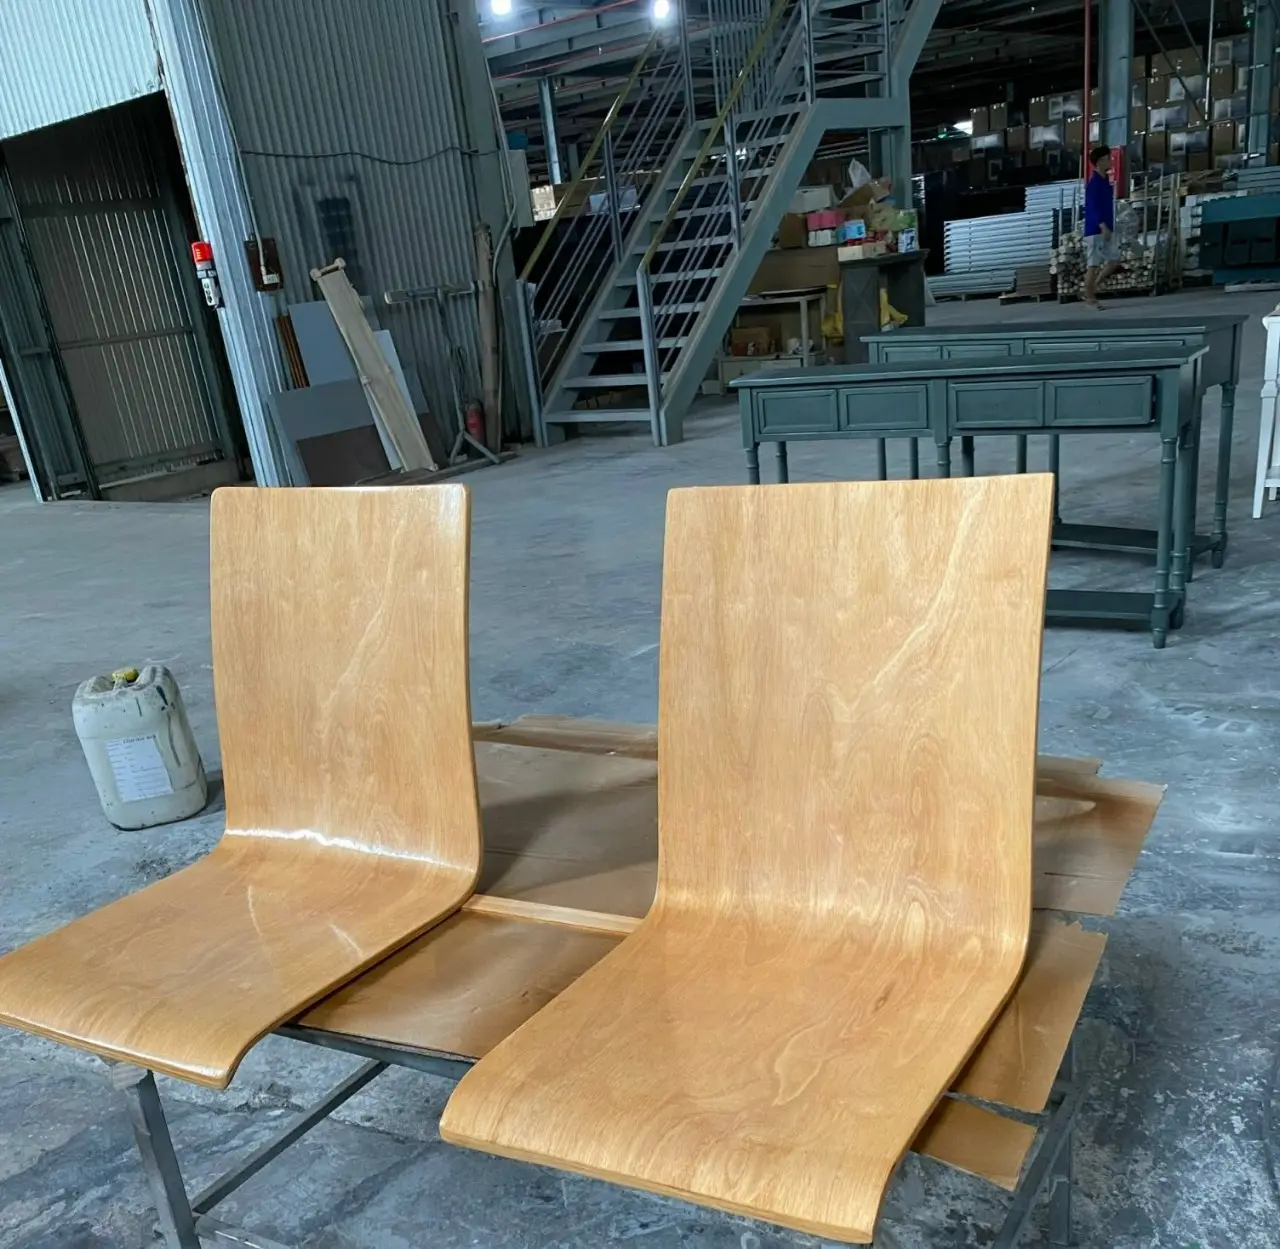 Vn. Prix d'usine directement personnalisé CNC contreplaqué plié chaise cadre bois contreplaqué plié pour meubles top export